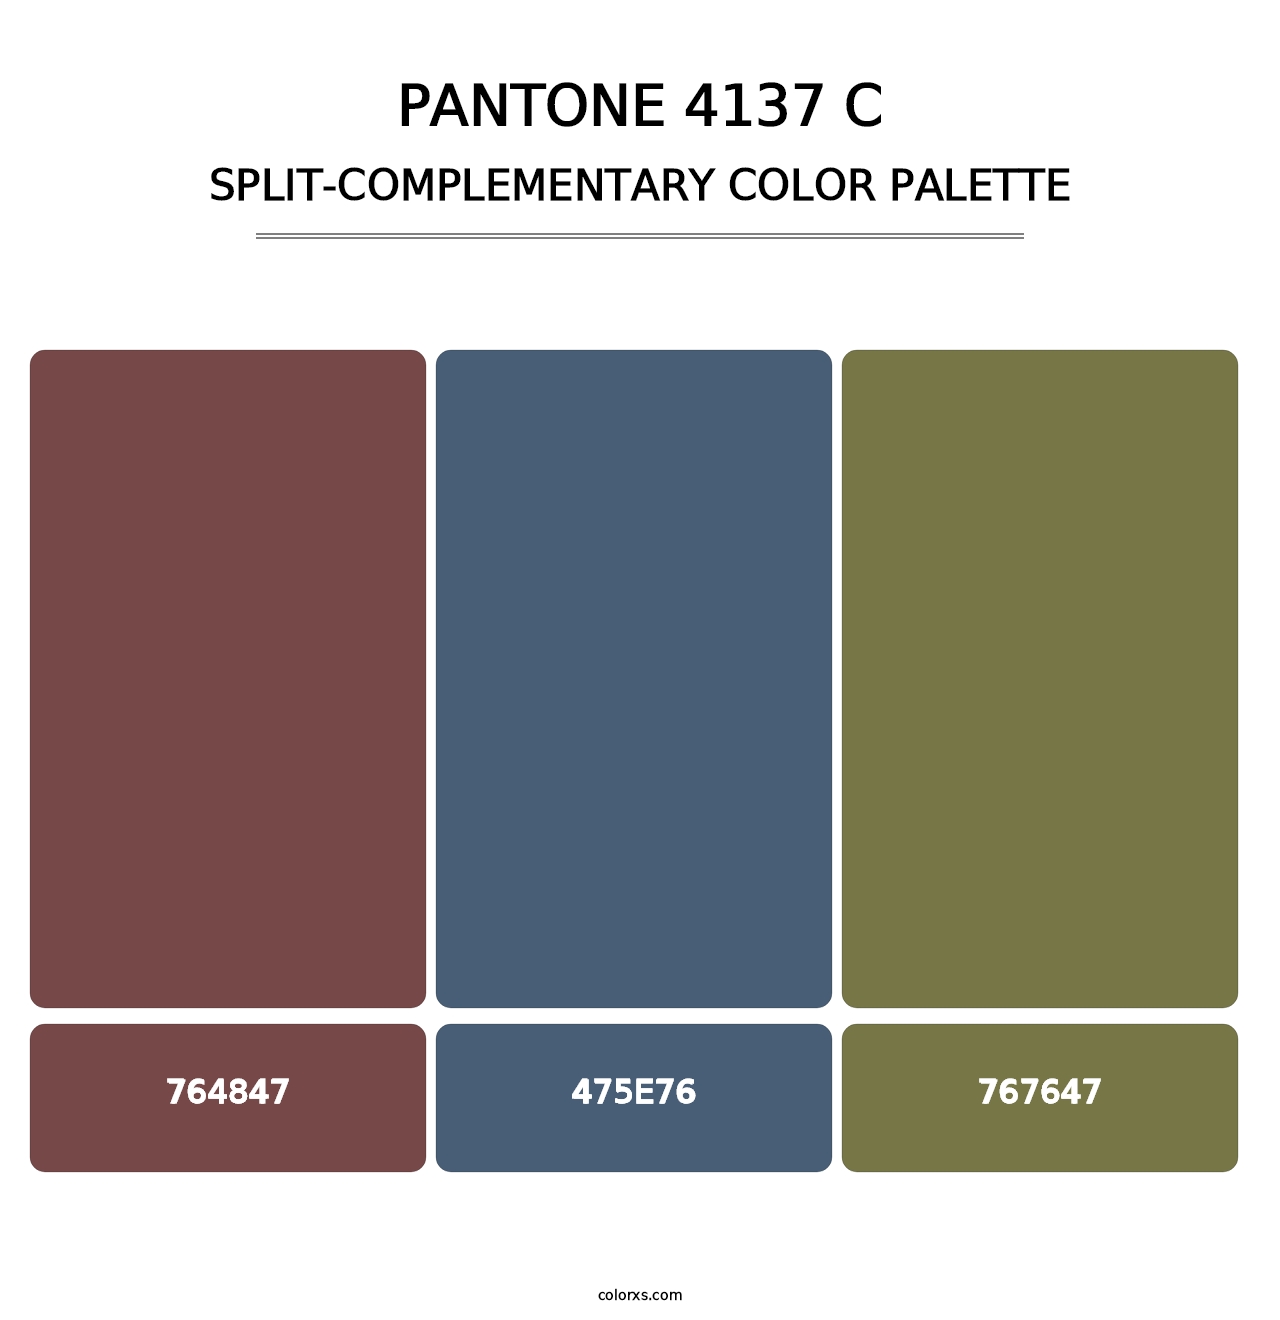 PANTONE 4137 C - Split-Complementary Color Palette